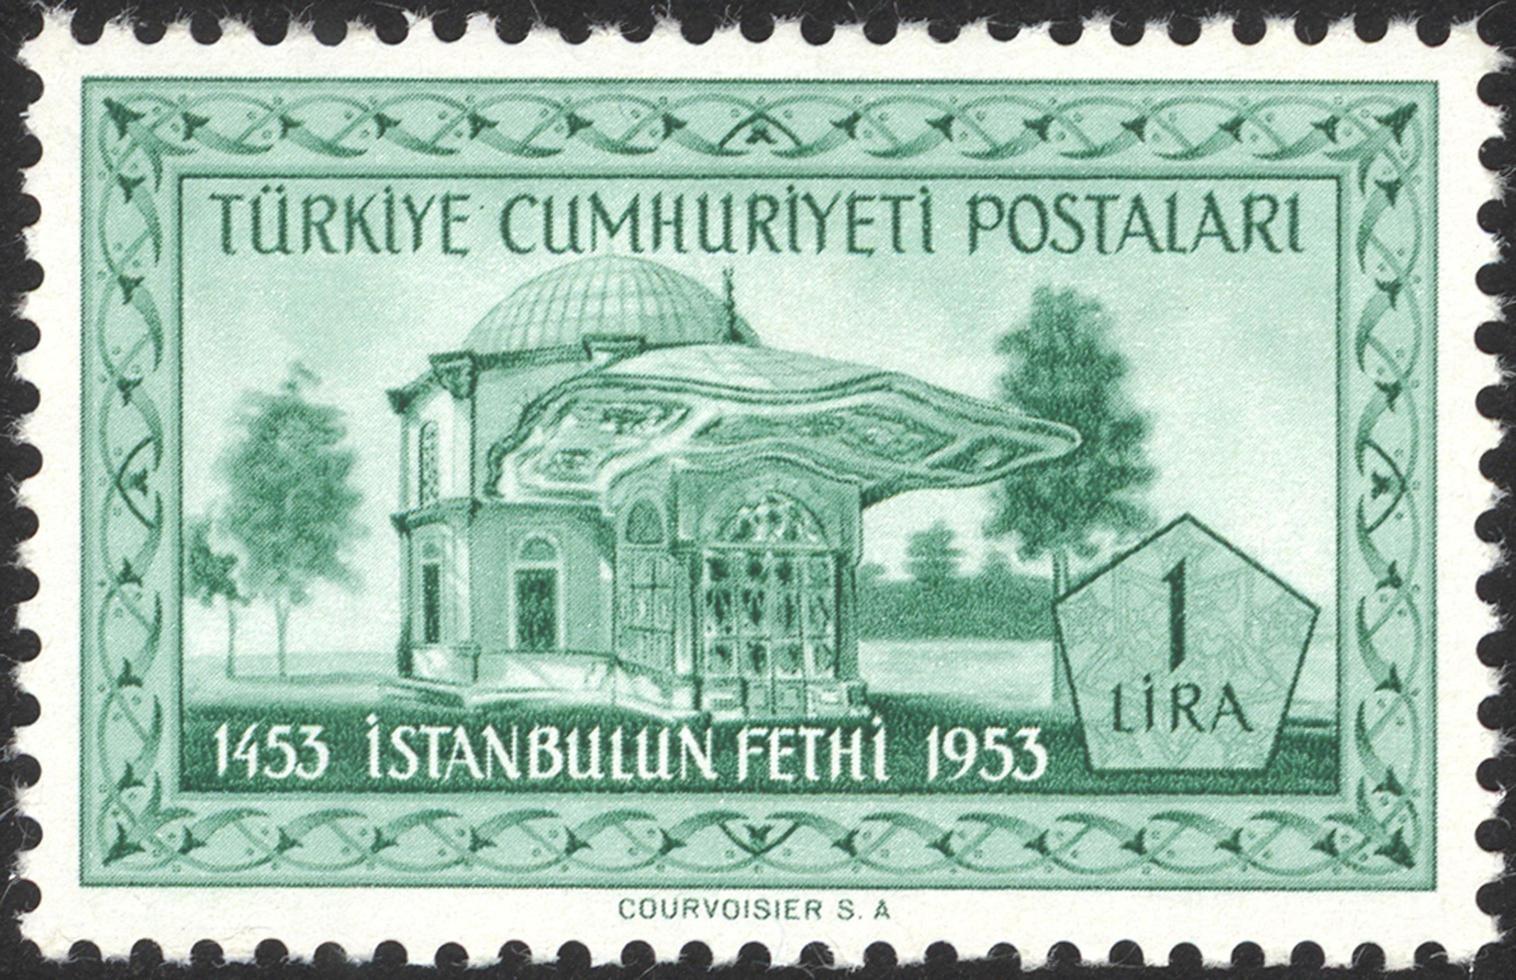 turkije, 2021 - vintage turkije postzegel foto